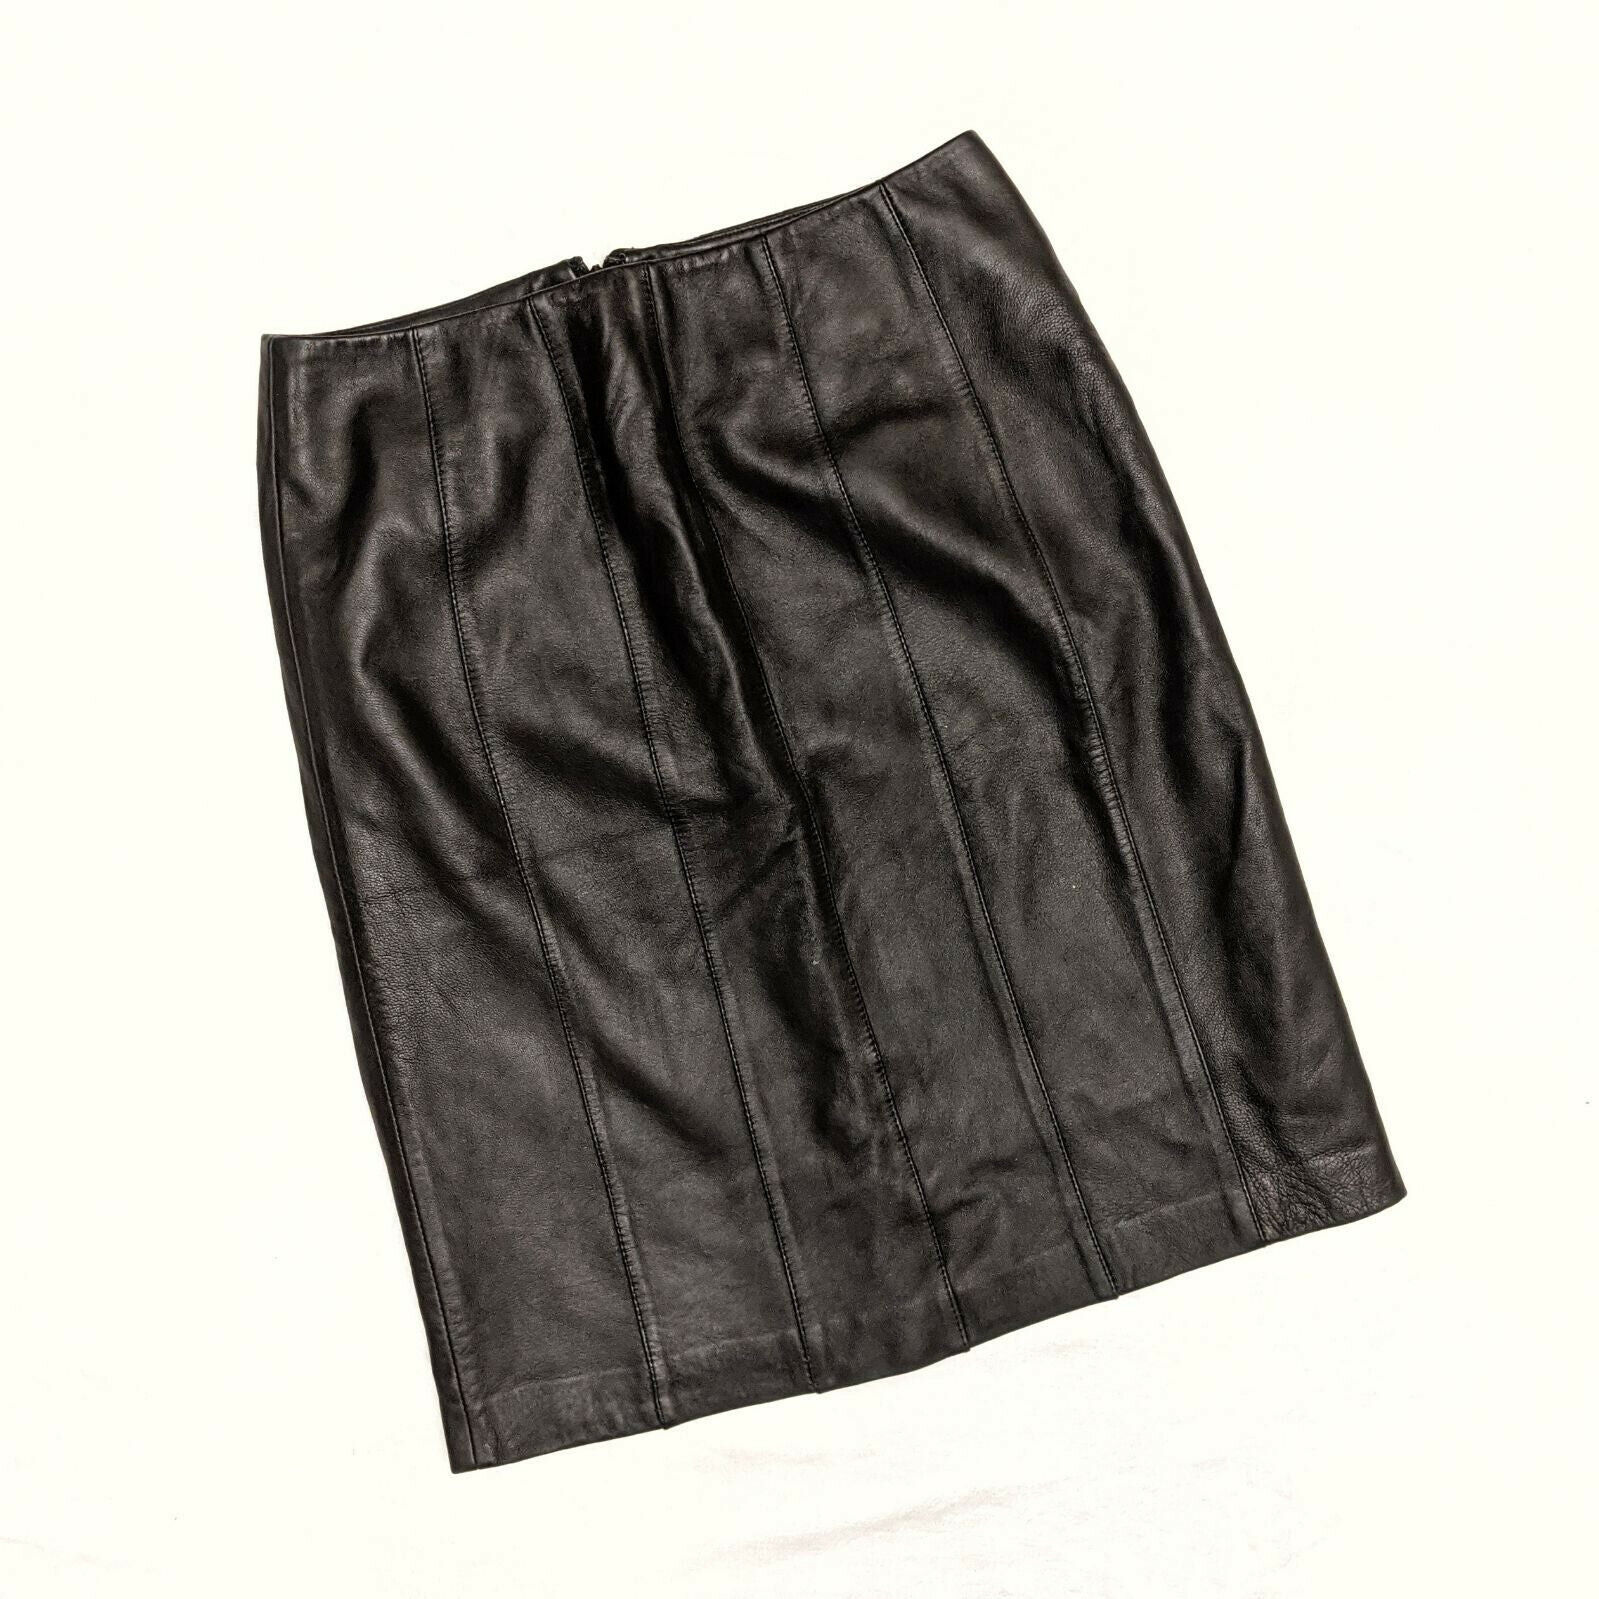 Revue Black Leather Pencil Skirt Sz 4 - image 3